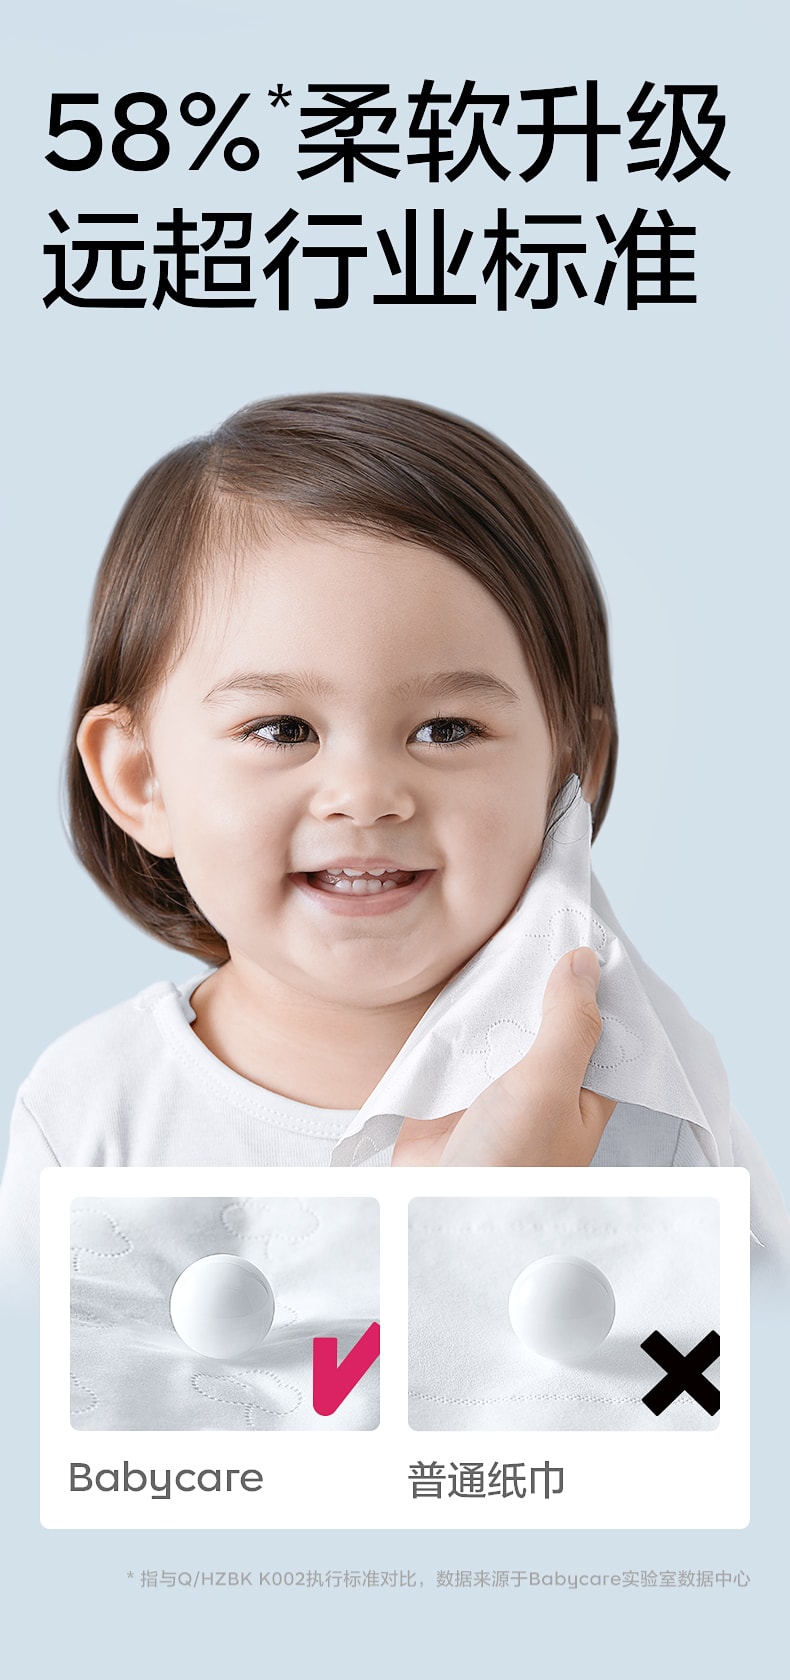 【中國直郵】BC BABYCARE 137mm*190mm-40抽/包 抽取式保濕紙巾 熊柔巾嬰兒保濕紙巾便攜